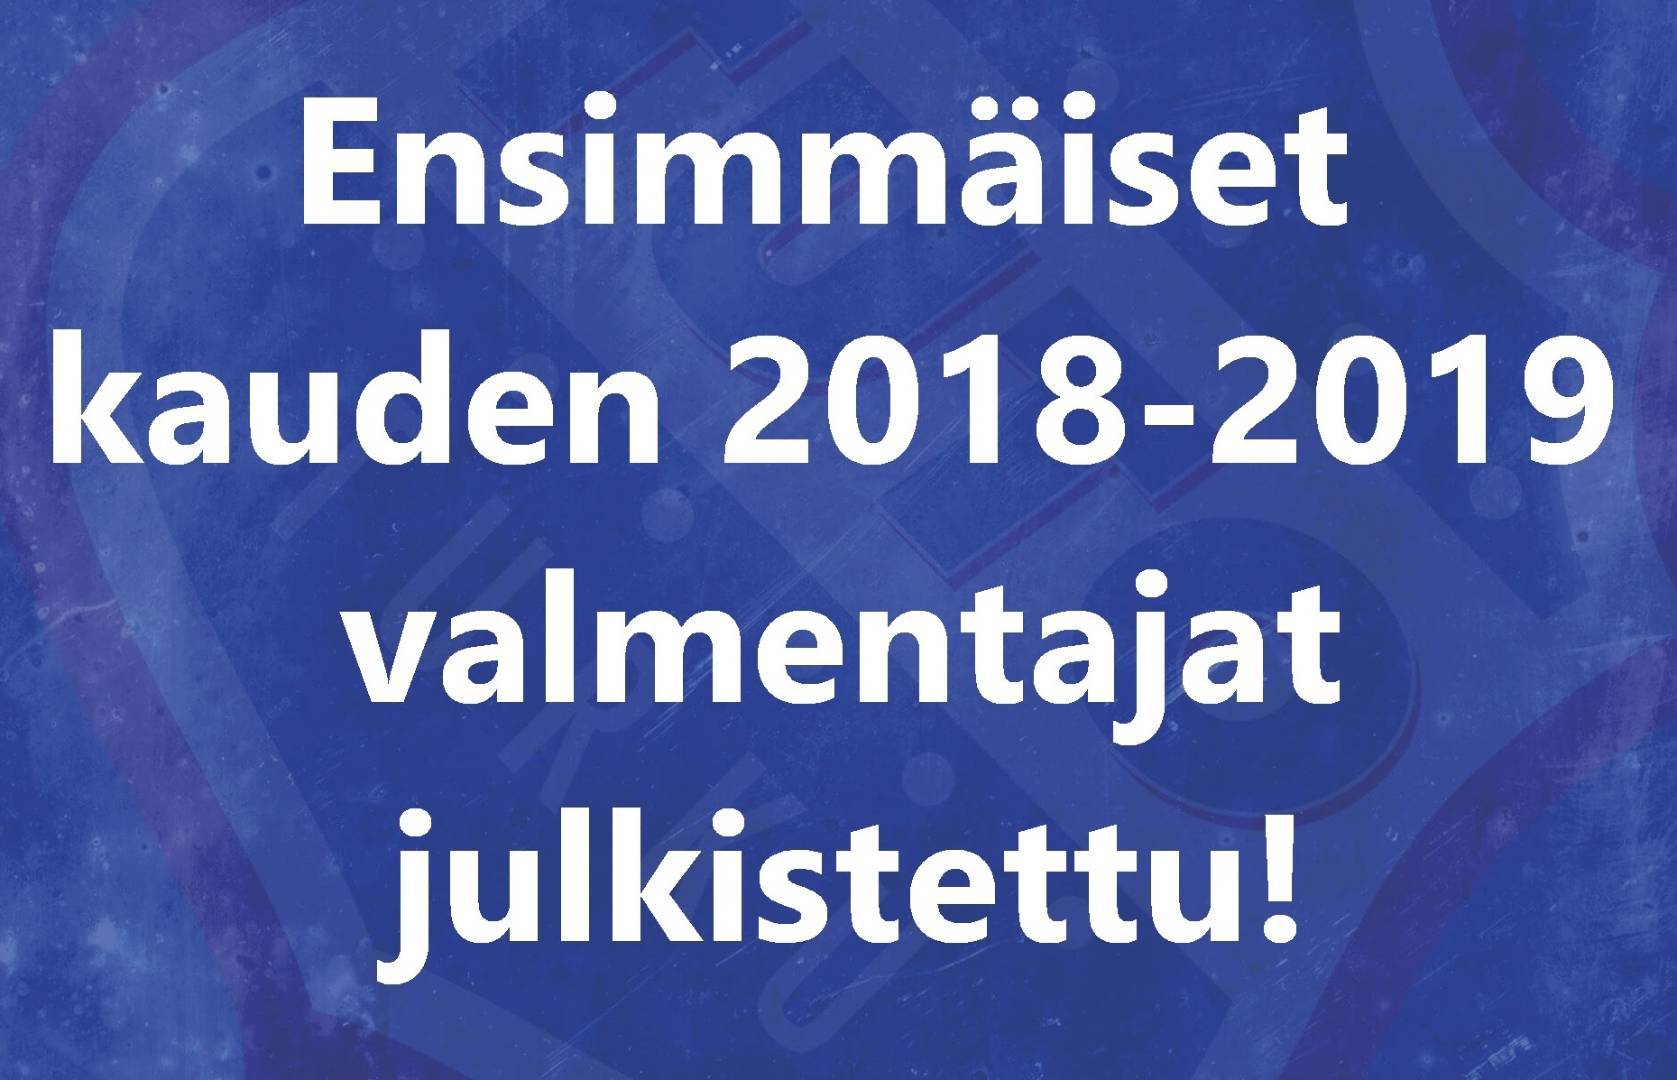 Ensimmäiset kauden 2018-2019 valmentajat julkistettu!